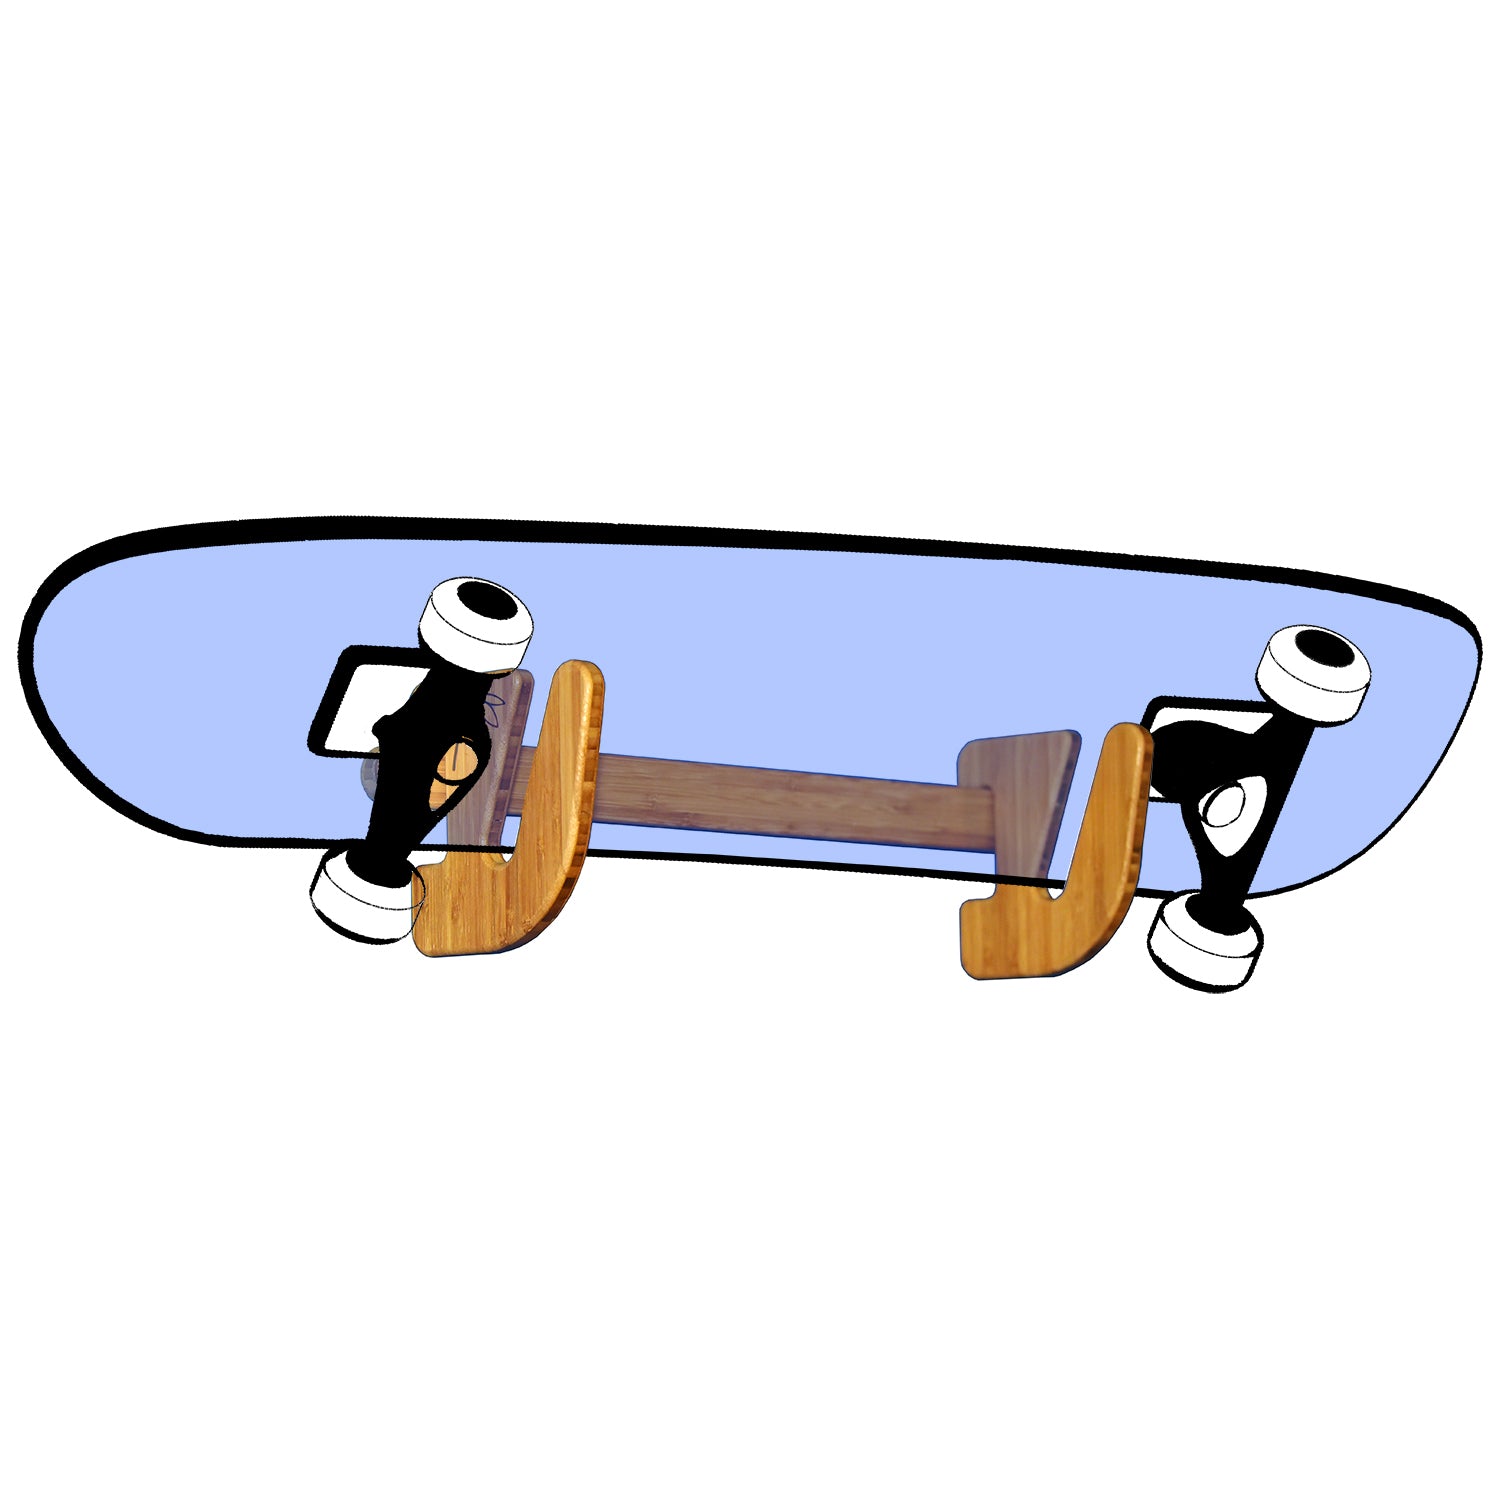 Skateboard Wall Mount